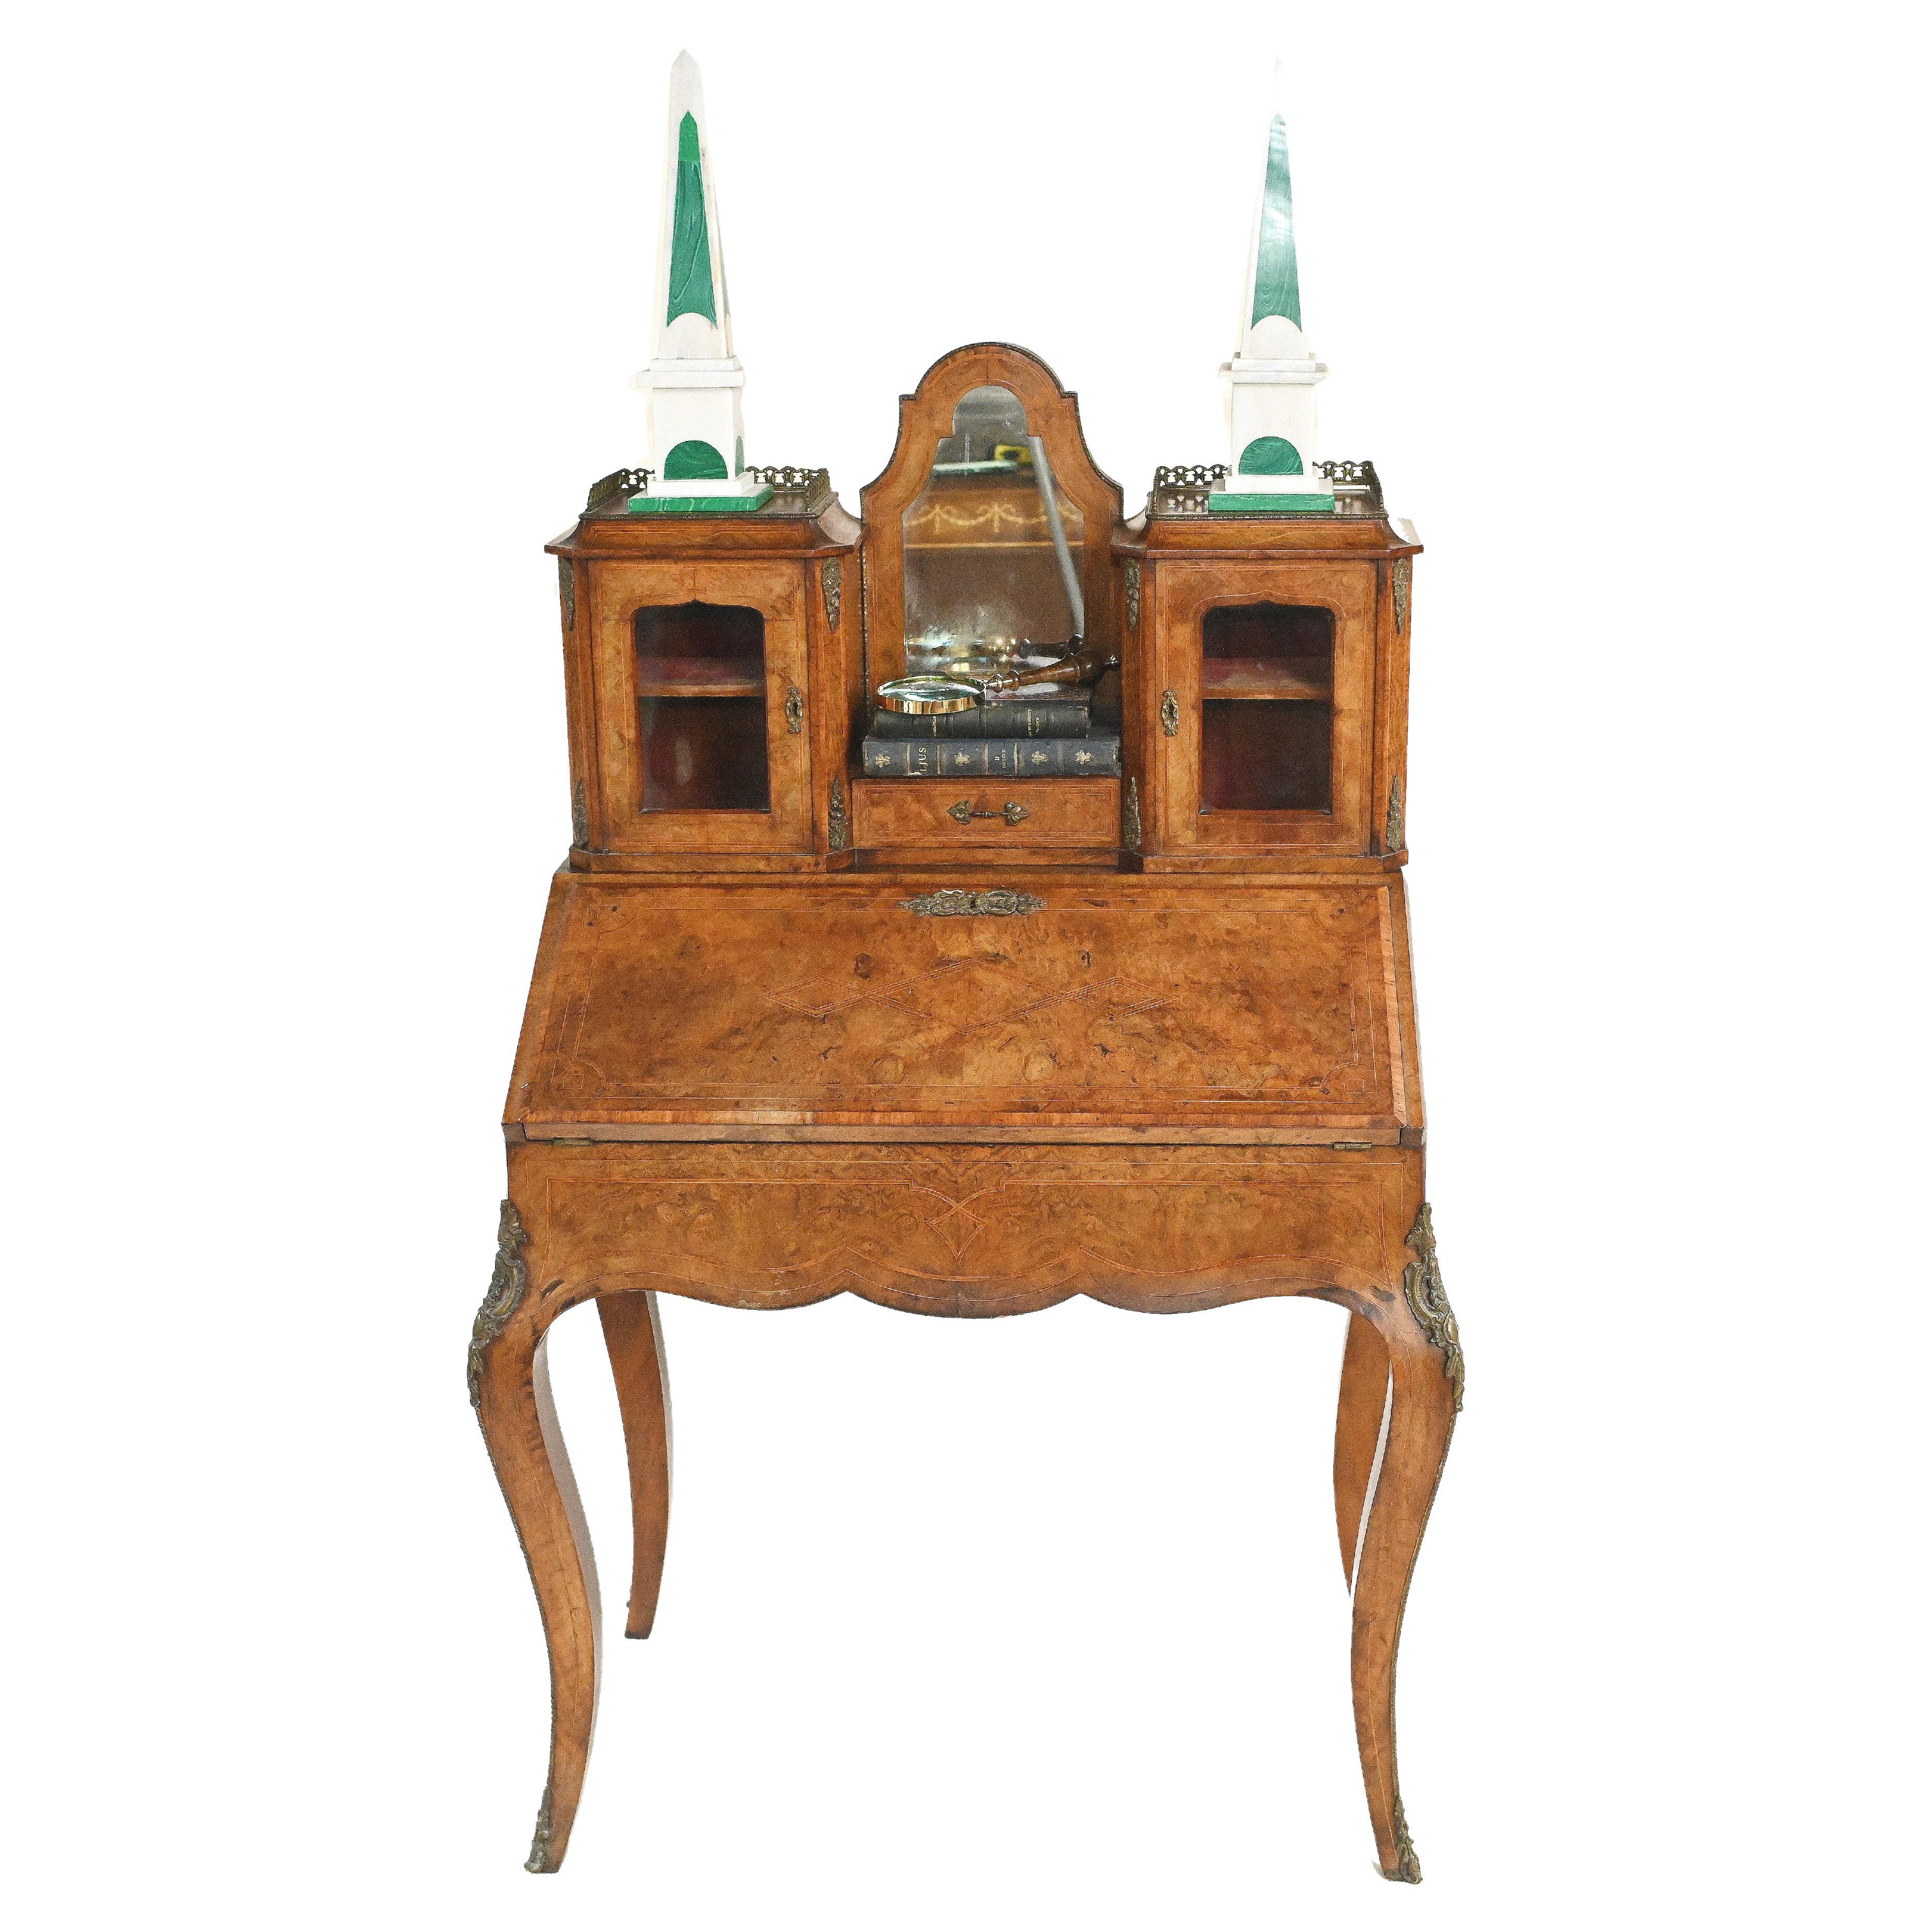 Antique French Desk, Walnut Bonheur De Jour Ladies Desk circa 1880